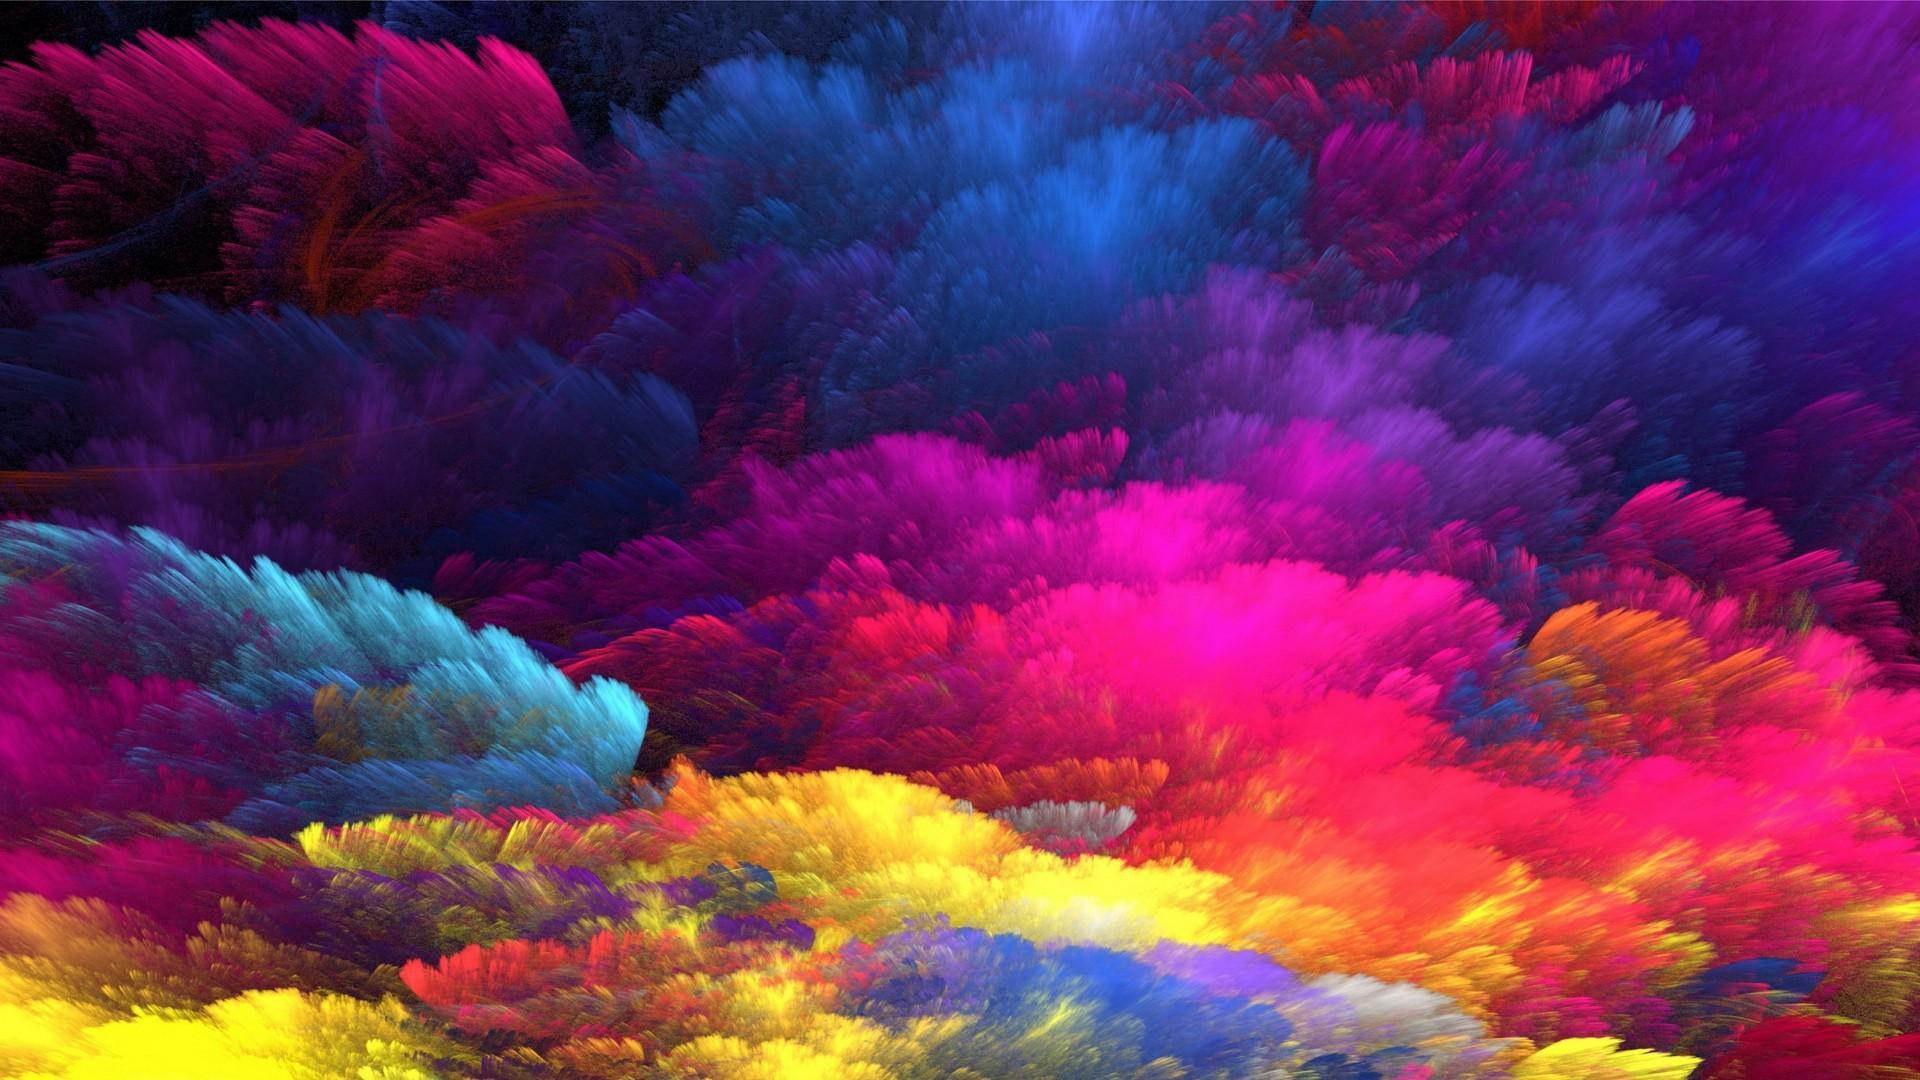 Rainbow Colors Abstract Art Wallpaper. Wallpaper Studio 10. Tens